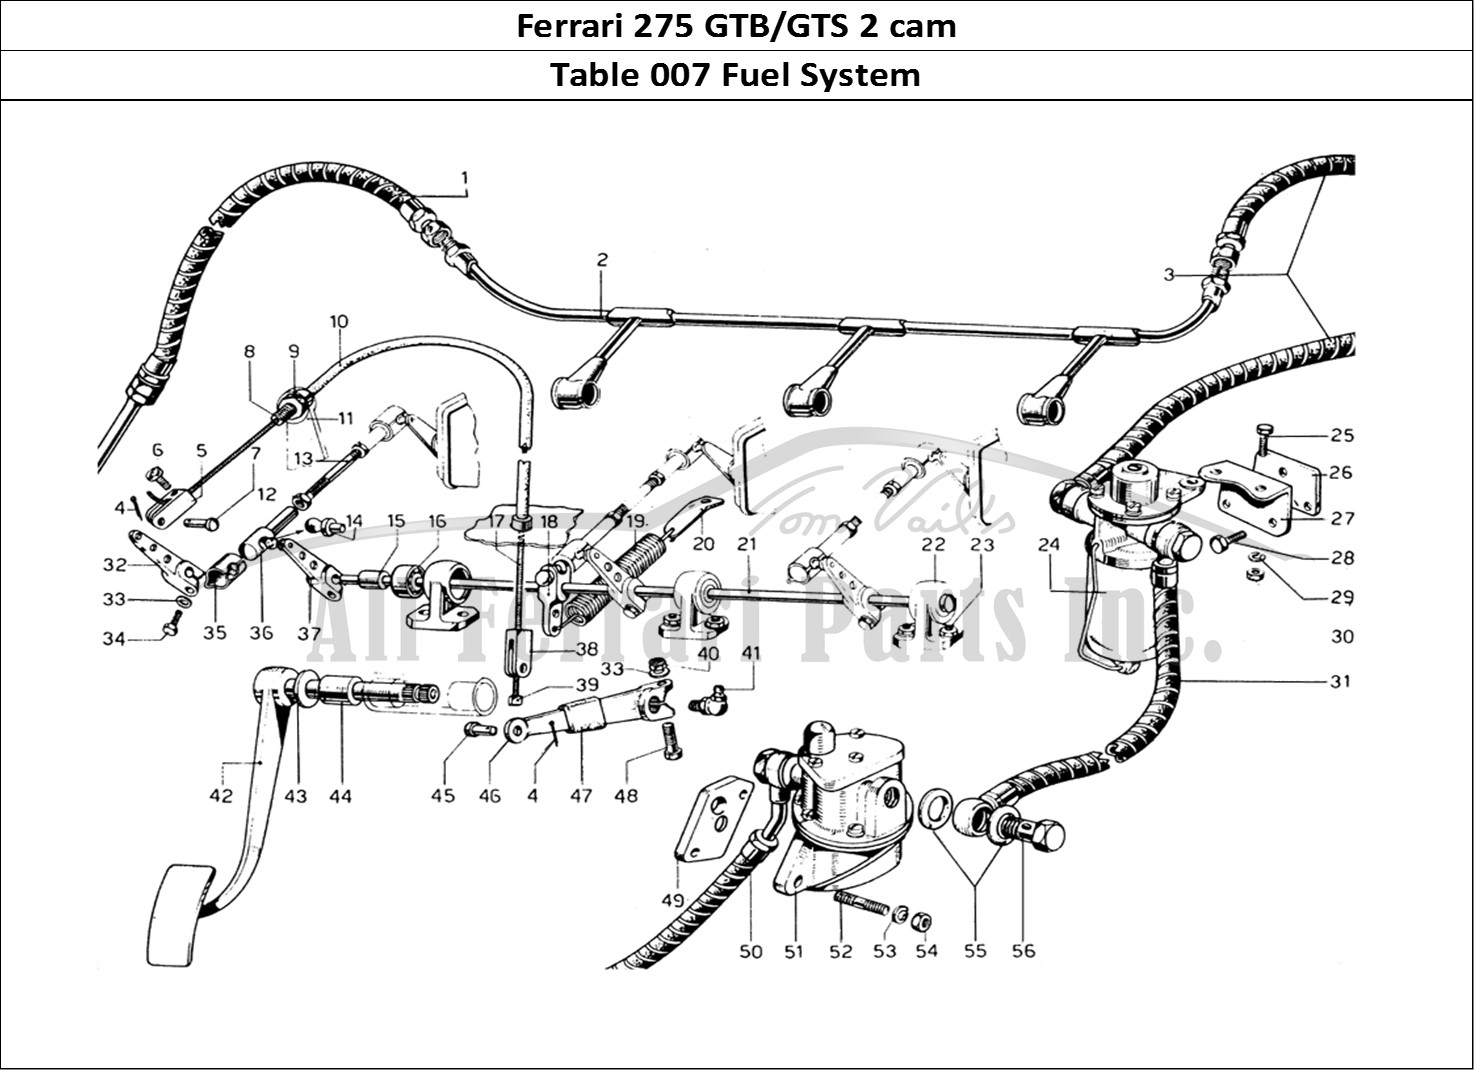 Ferrari Parts Ferrari 275 GTB/GTS 2 cam Page 007 Fuel System